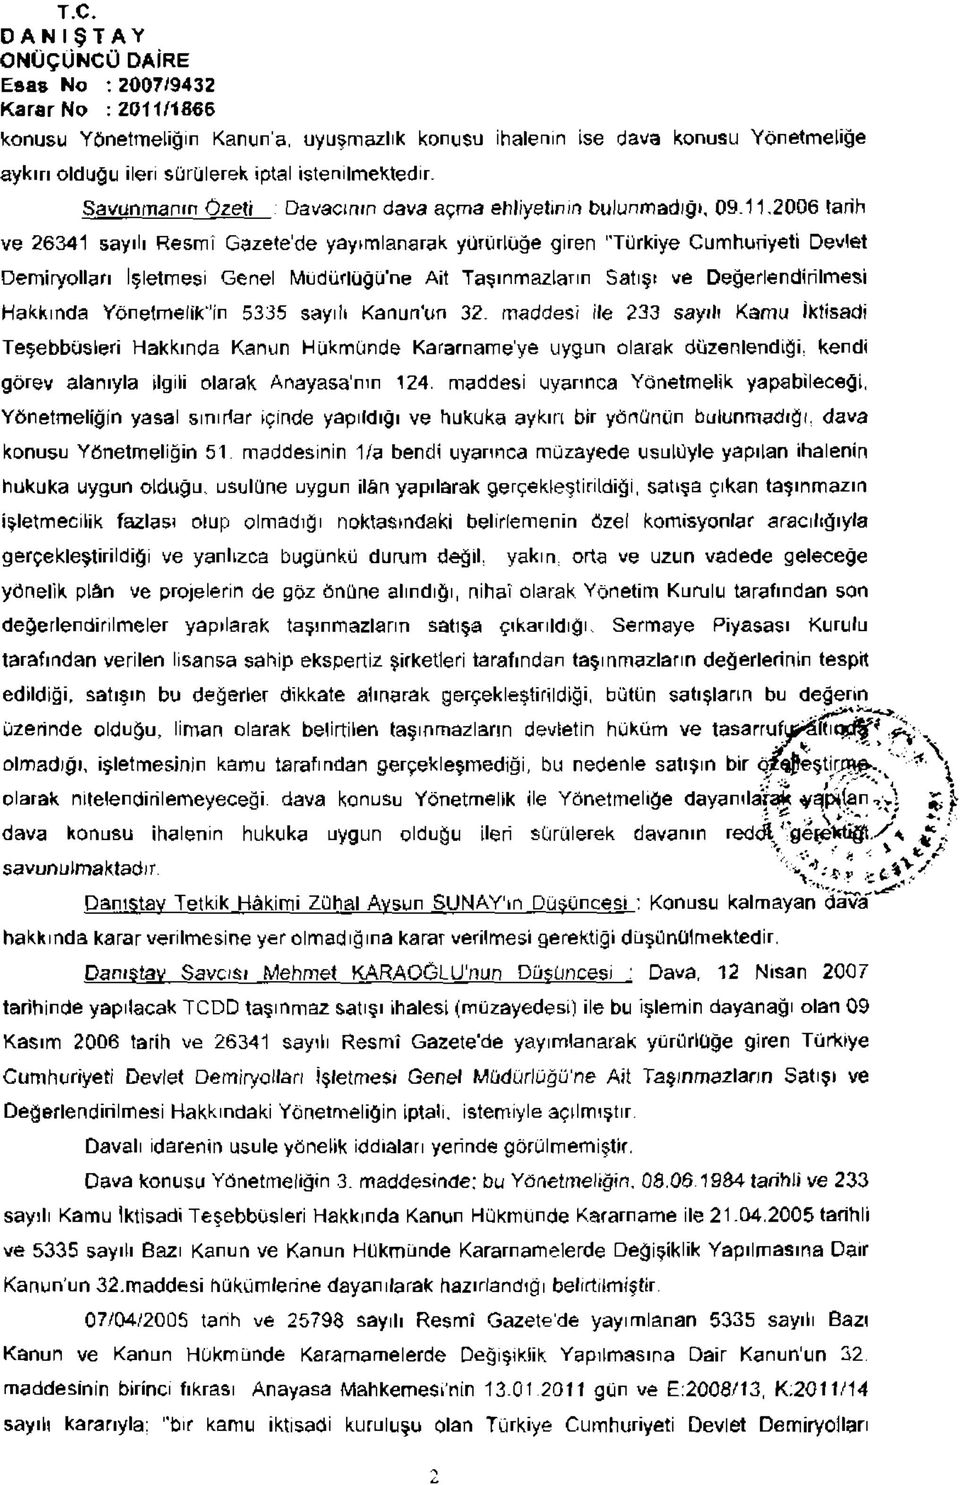 2006 tarih ve 26341 sayılı Resmî Gazetede yayımlanarak yürürlüğe giren "Türkiye Cumhuriyeti Devlet Demiryolları İşletmesi Genel Müdürlüğü'ne Ait Taşınmazların Satış* ve Değerlendirilmesi Hakkında